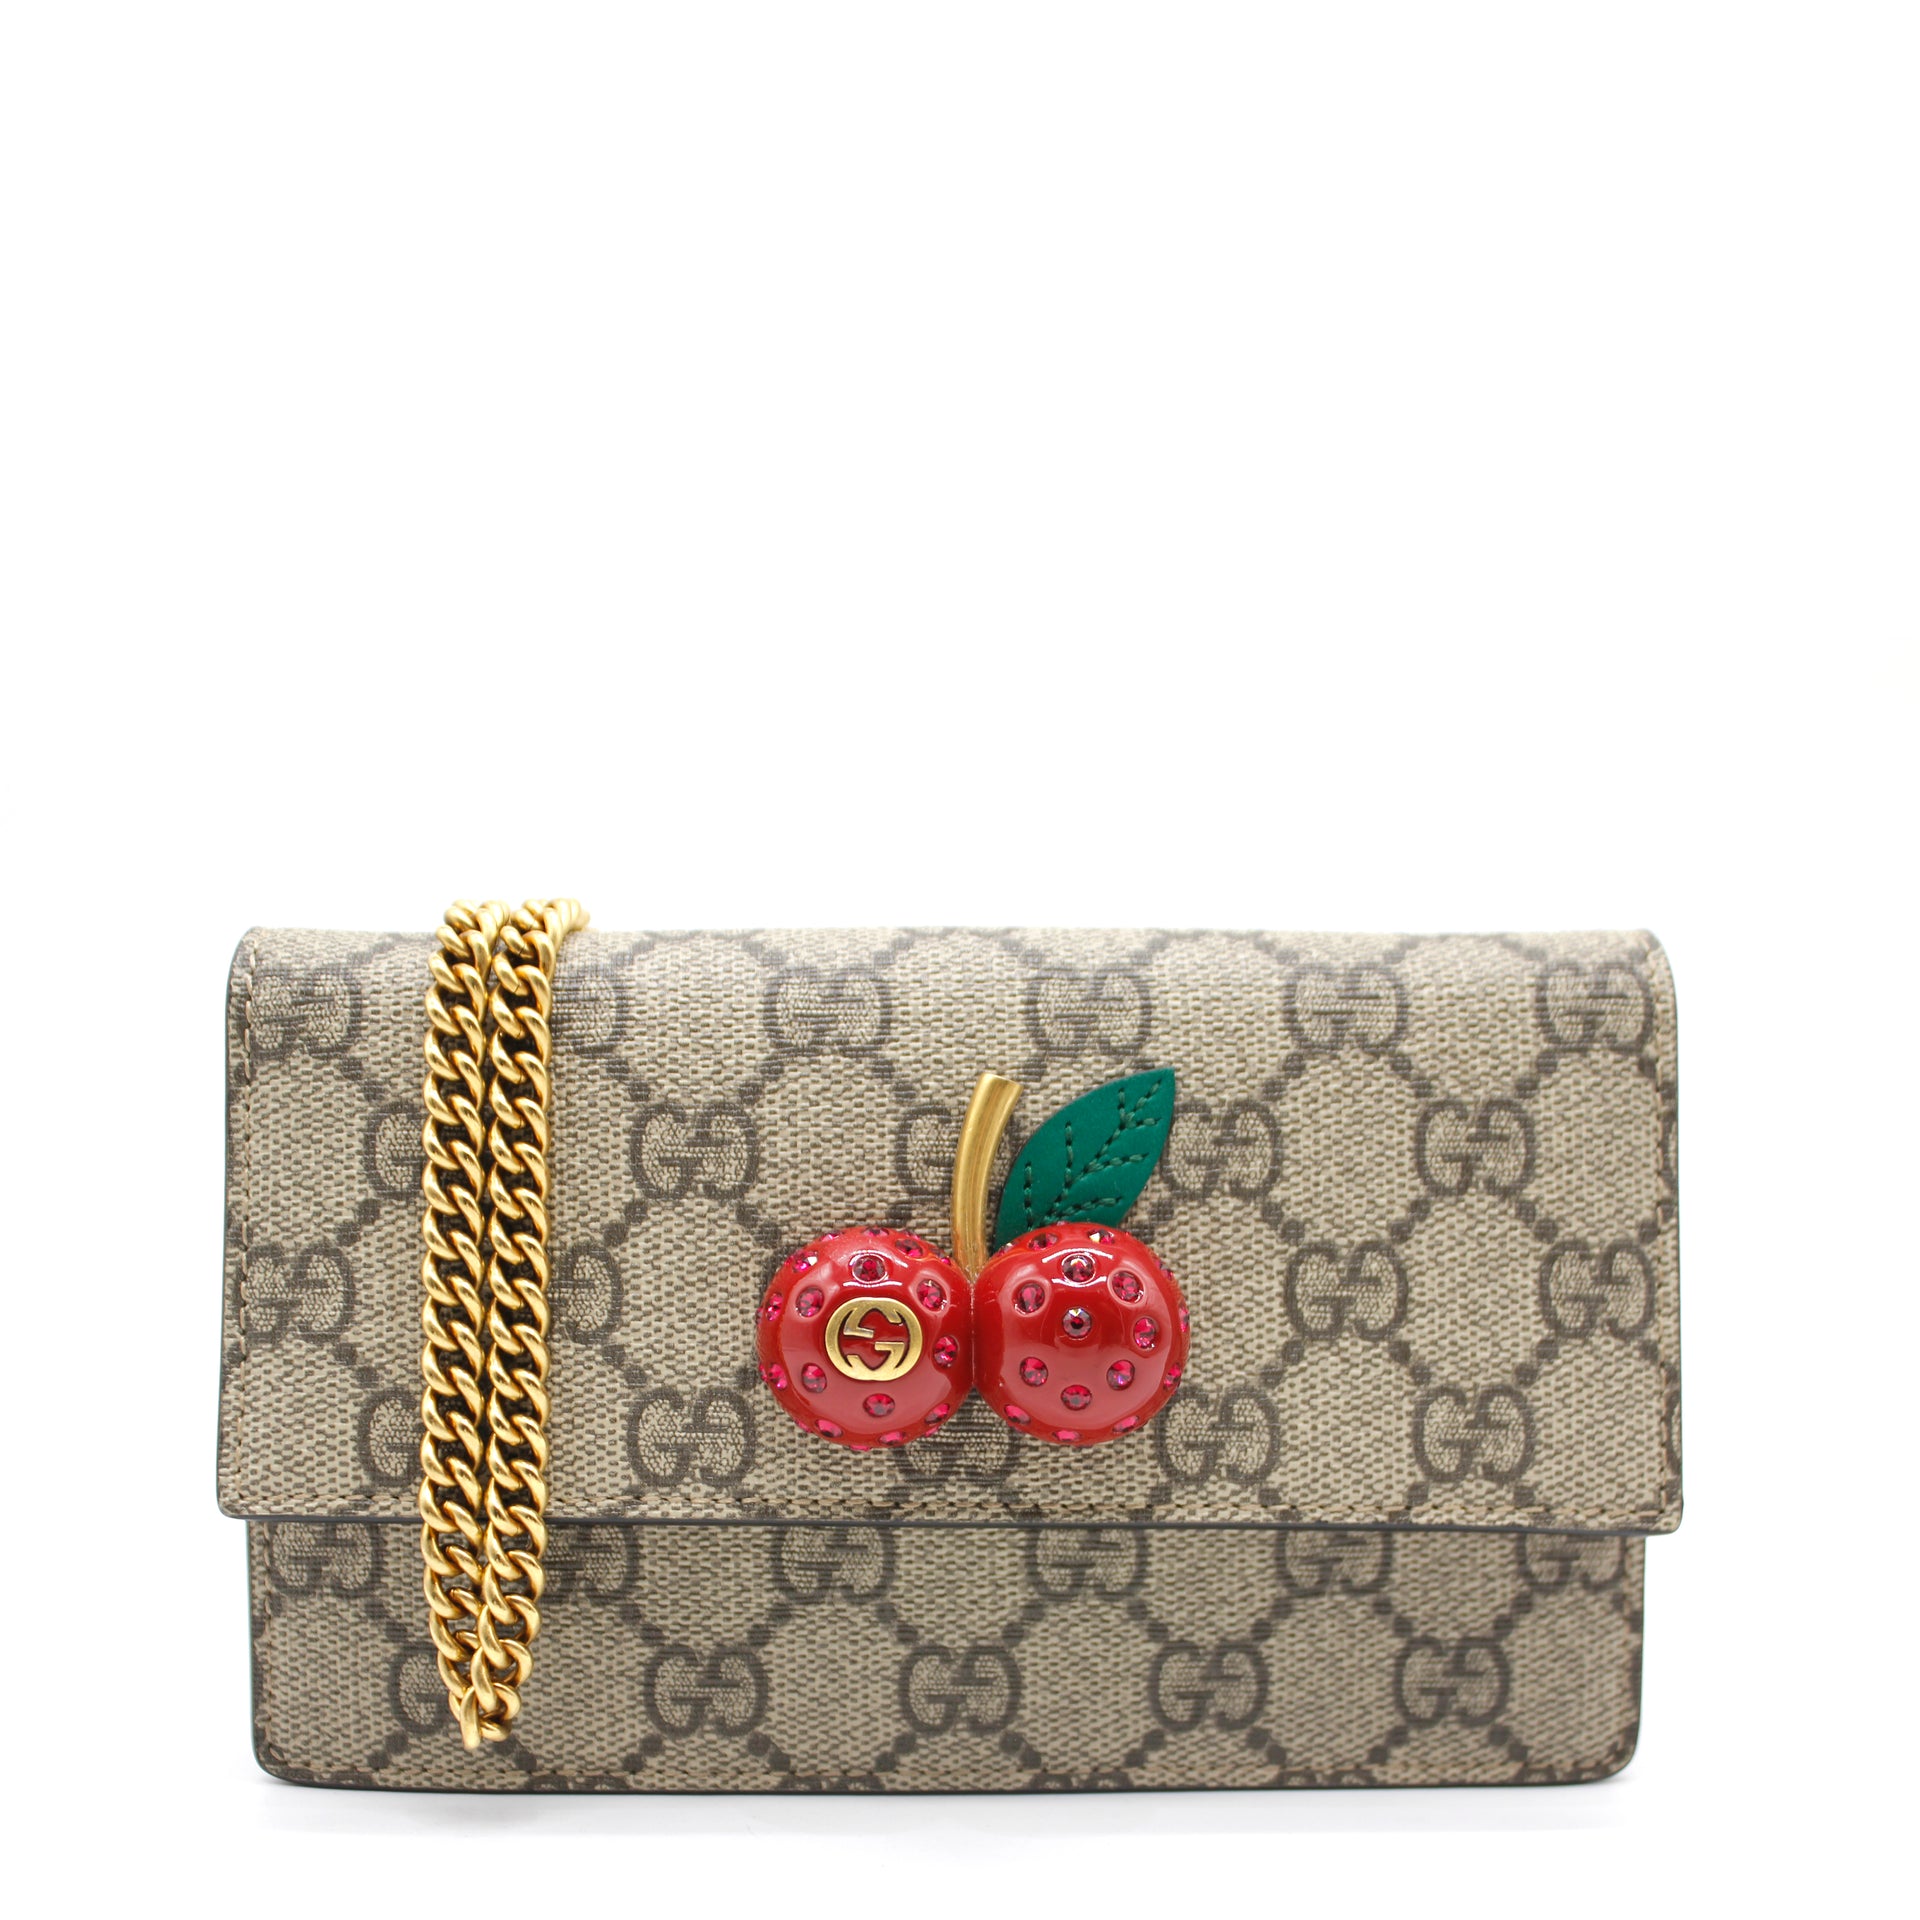 Gucci GG Supreme mini bag with cherries – STYLISHTOP